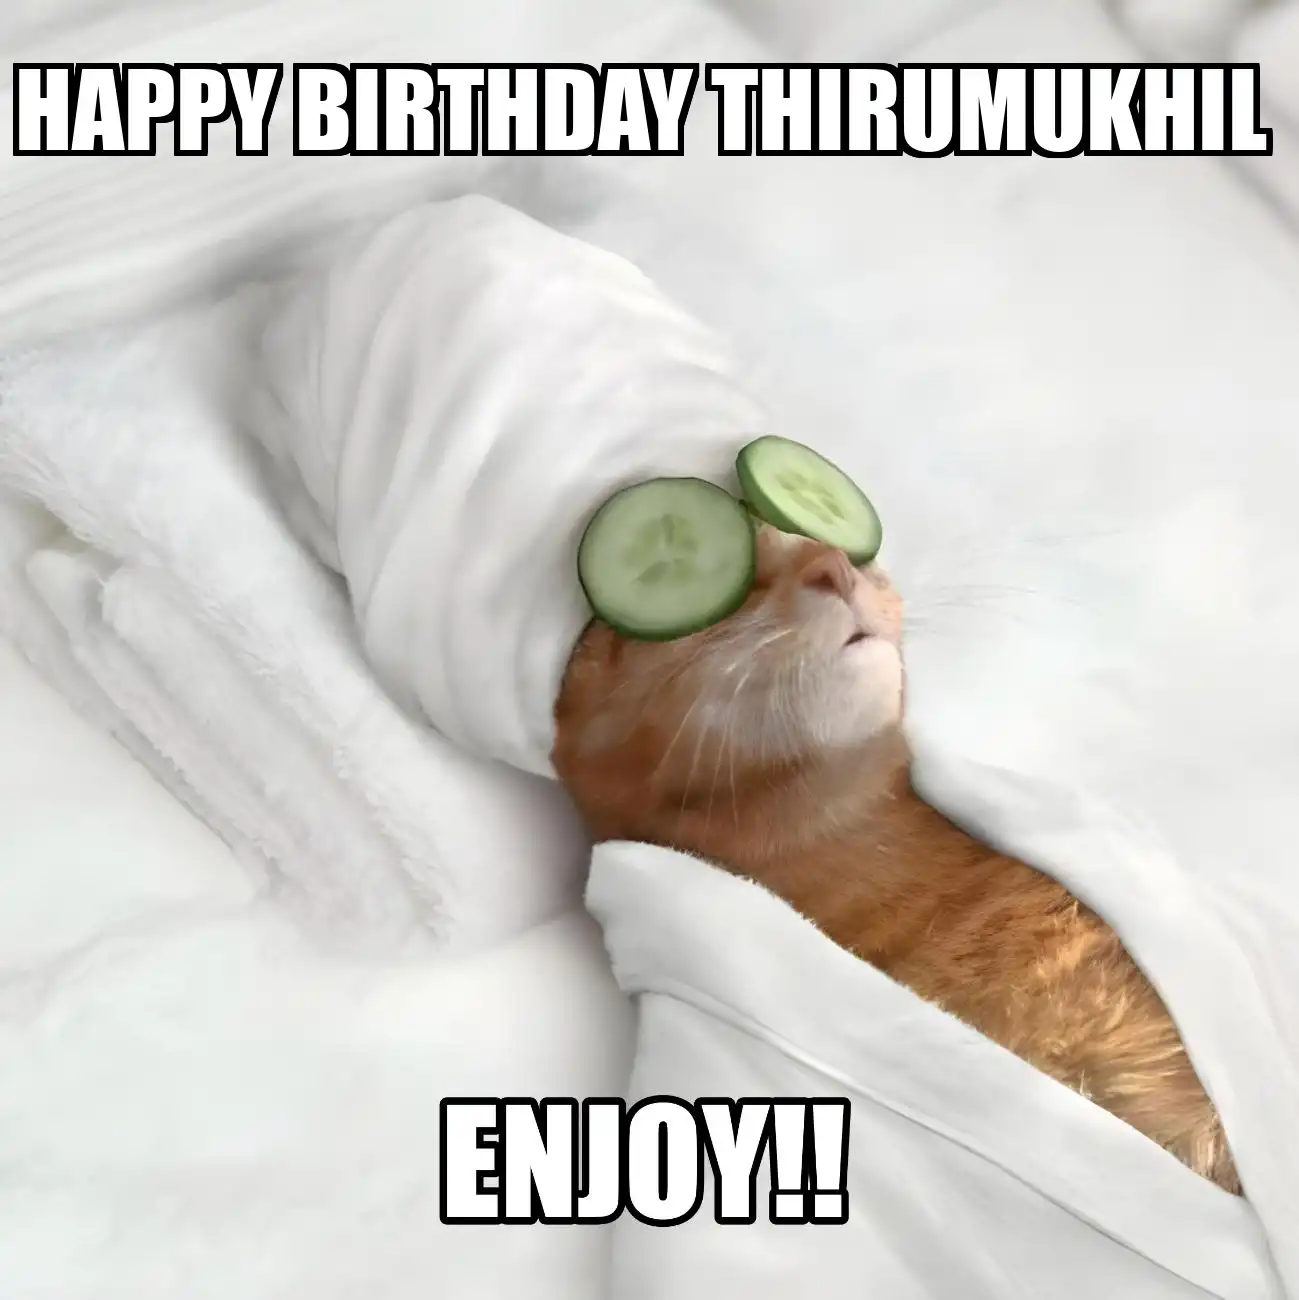 Happy Birthday Thirumukhil Enjoy Cat Meme